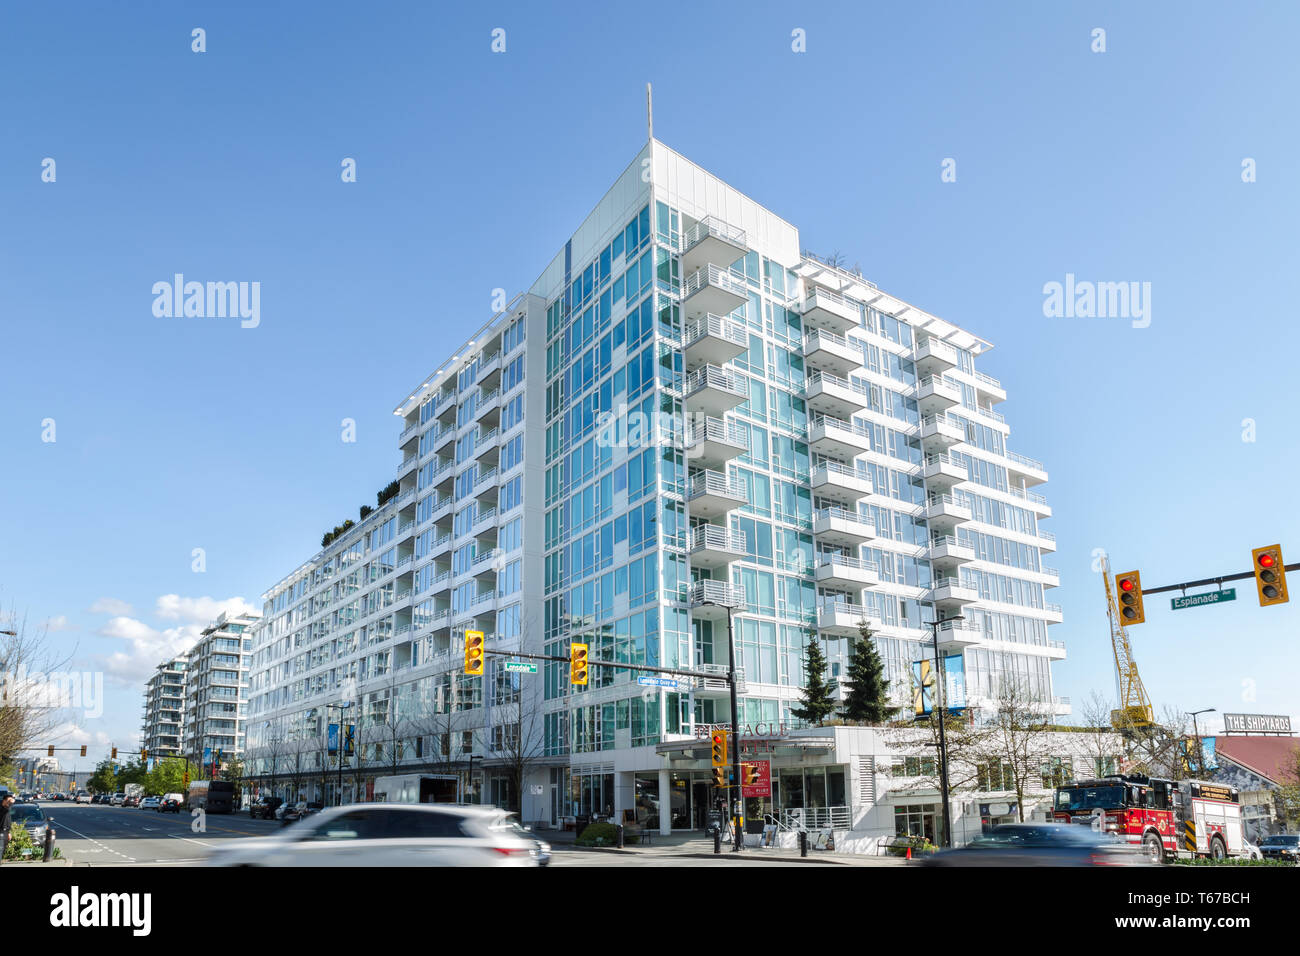 NORTH VANCOUVER, BC, CANADA - Apr 26, 2019 : Nouveaux développements construit sur l'Esplanade Ave dans le cadre de la poursuite de l'essor de la construction dans la région de Vancouver. Banque D'Images